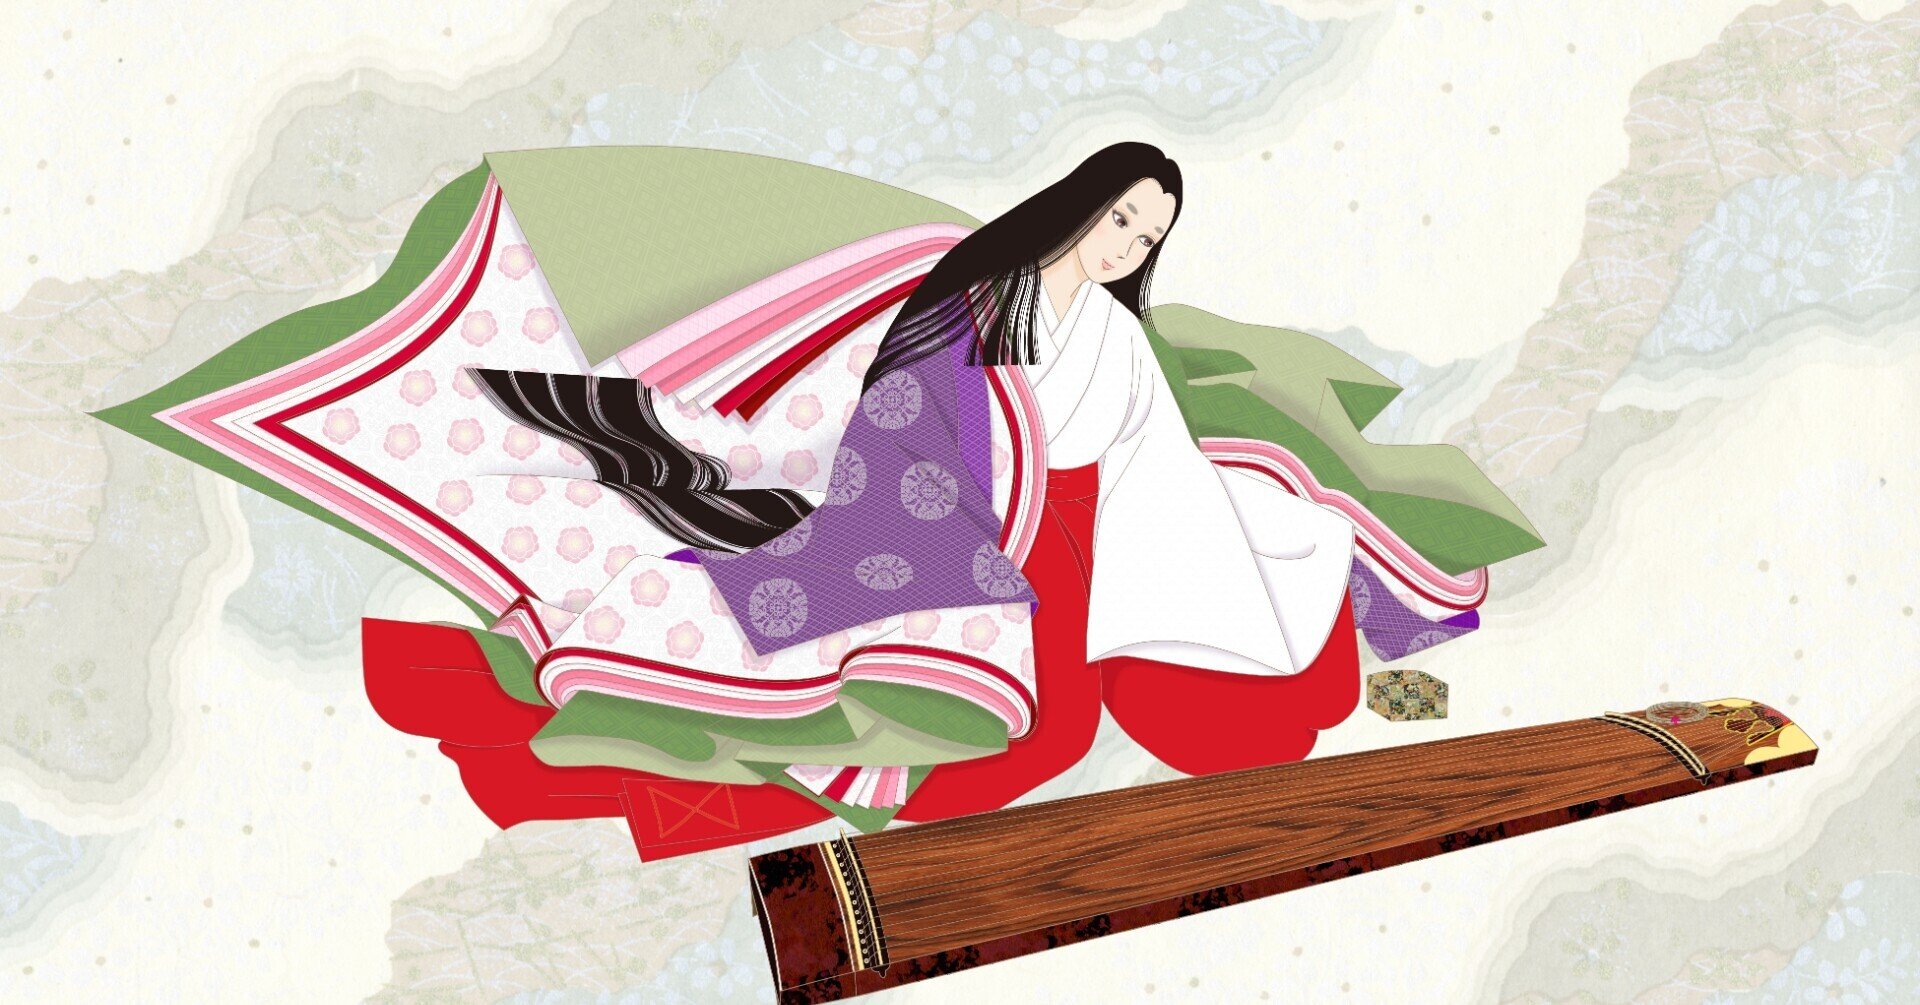 平安の悪女に花束を 藤原薬子の素顔 日本古代史の謎を読み解く ほんのひととき Note